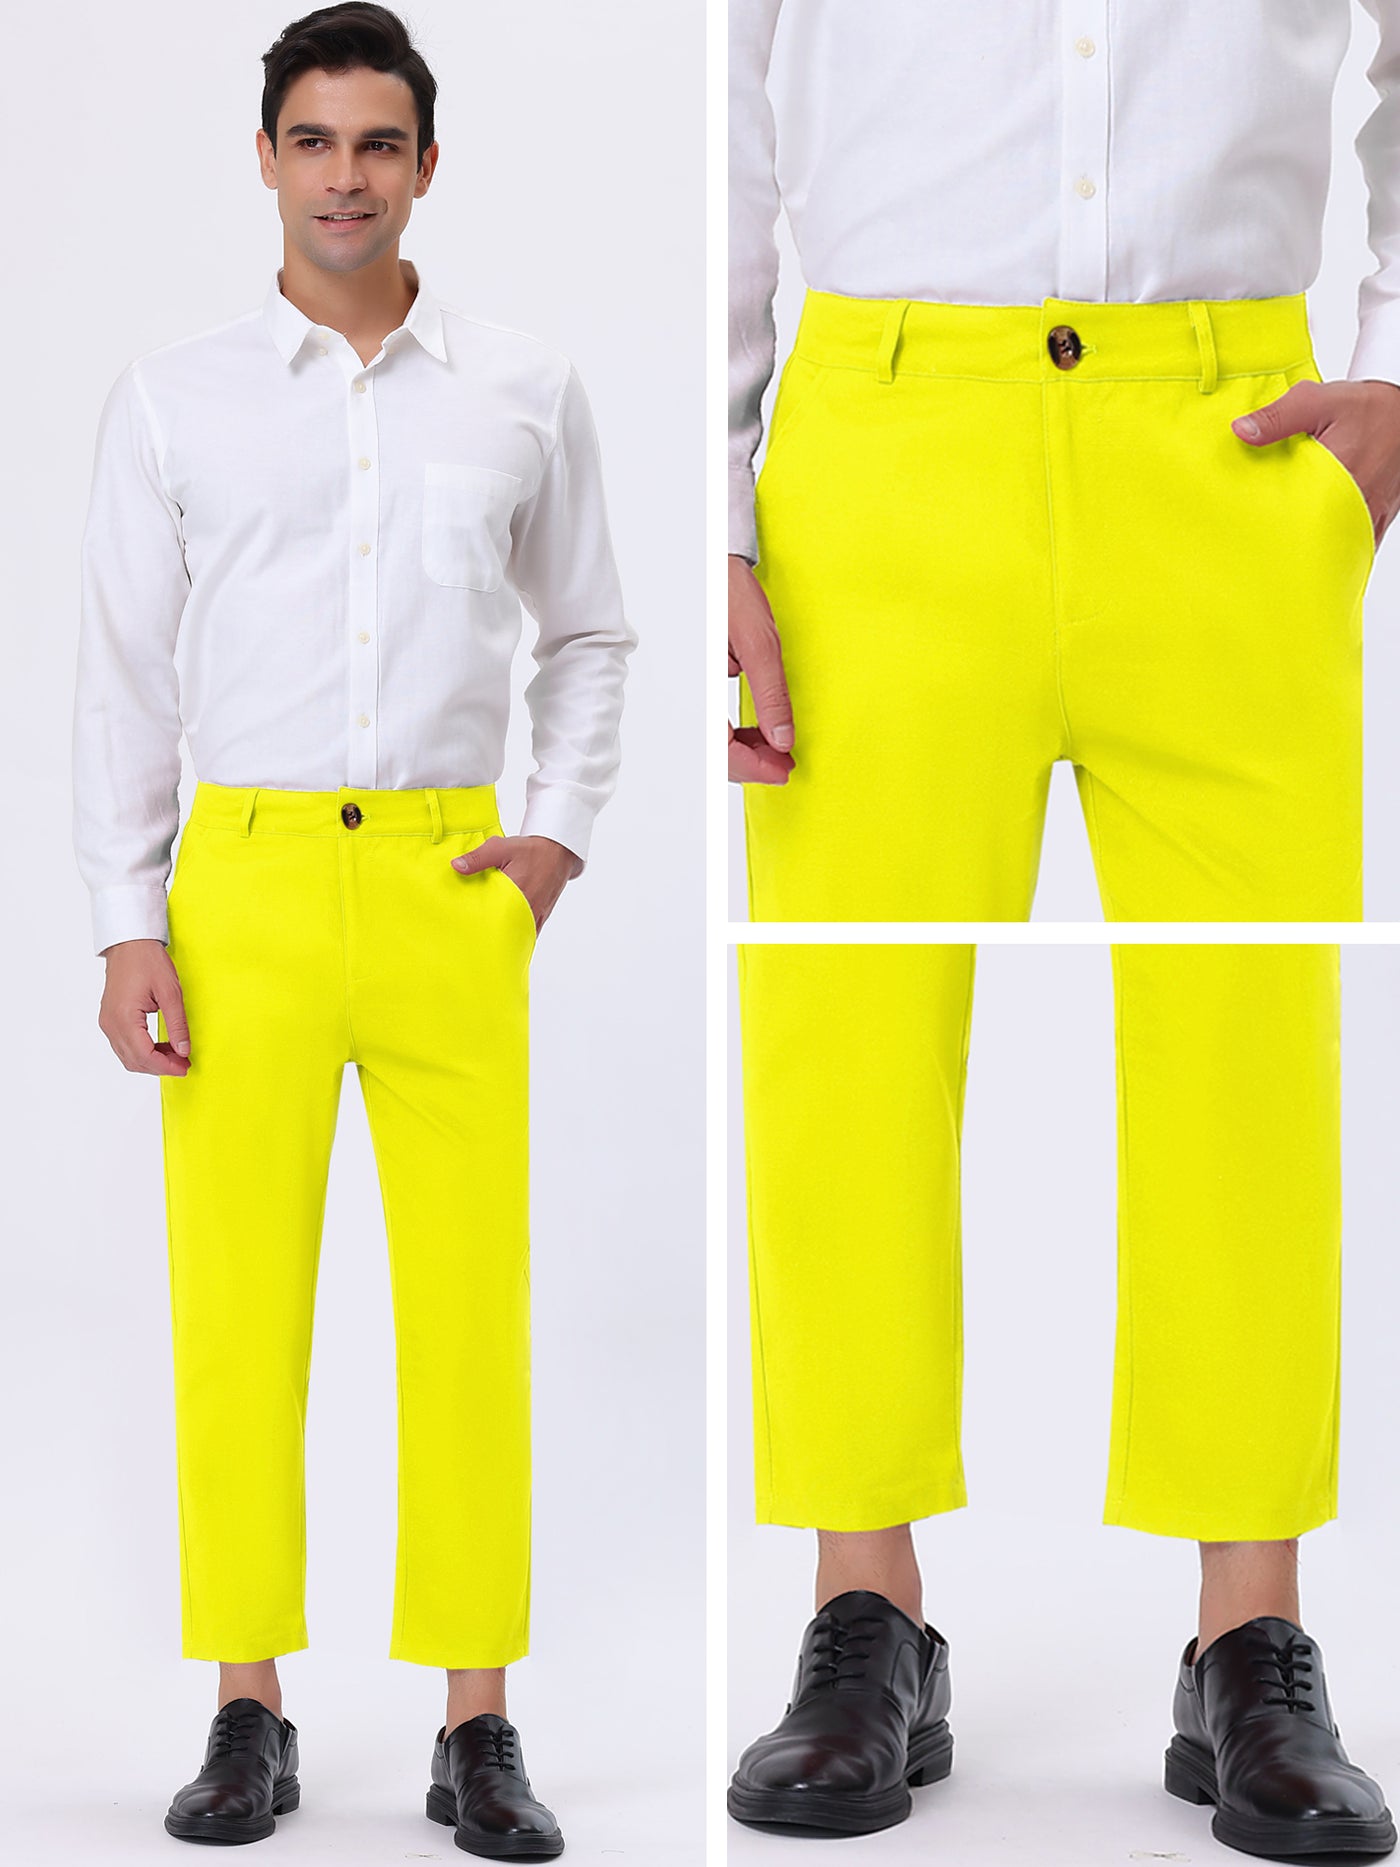 Bublédon Men's Business Pants Classic Fit Flat Front Straight Suit Trousers